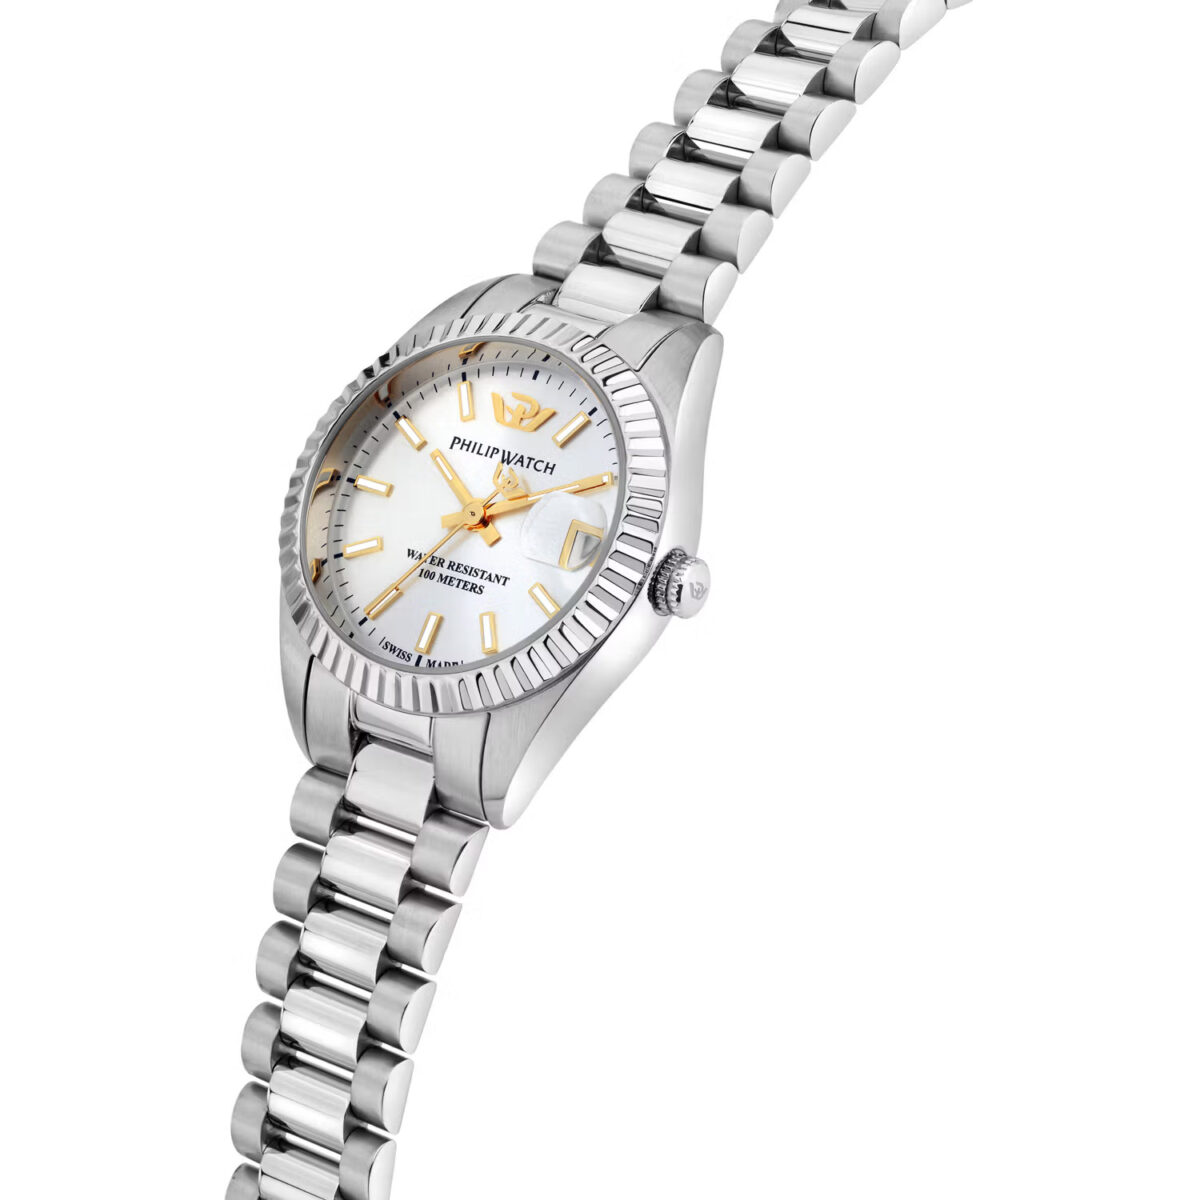 Orologio donna quadrante bianco con dettagli dorati Philip Watch solo tempo idea regalo donna R8253597651 prezzo